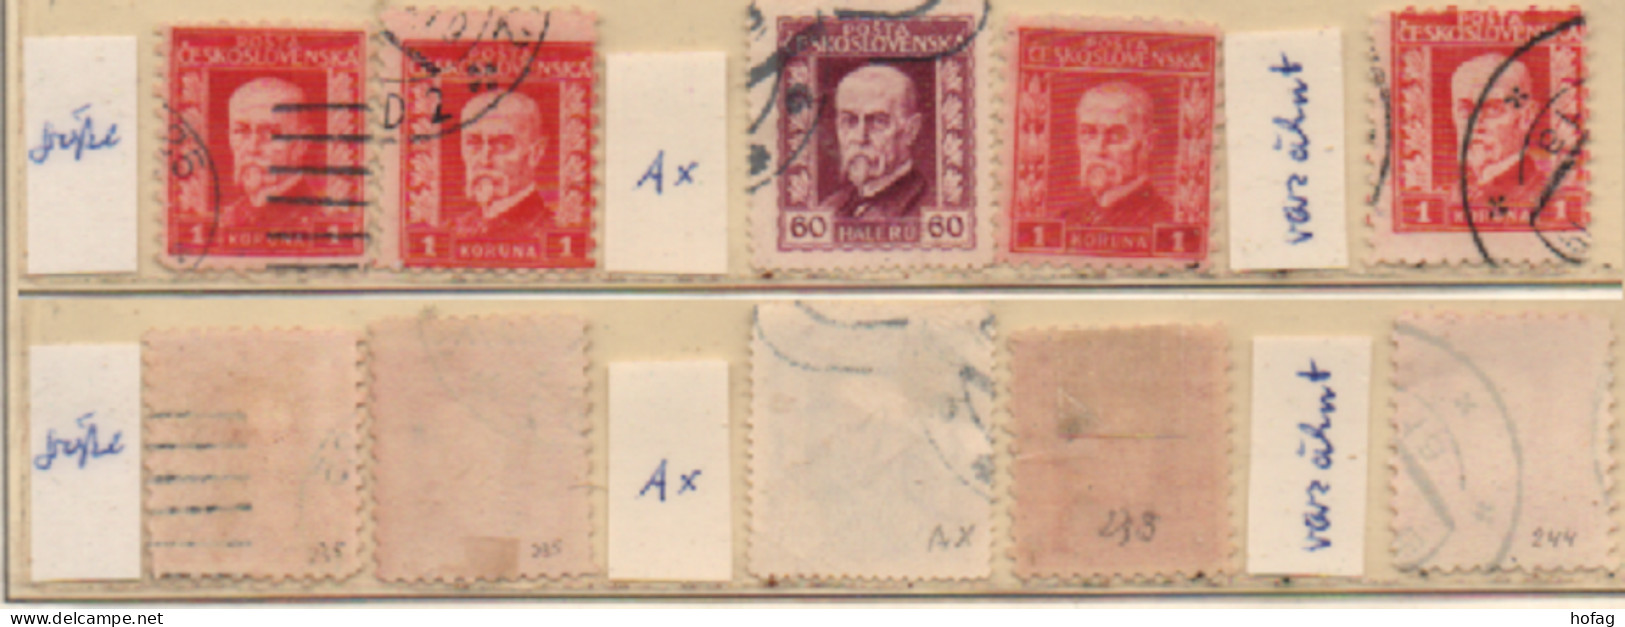 Tschechoslowakei 1925 Masaryk 5 Marken Siehe Bild Gestempelt Czechoslovakia Used - Usati